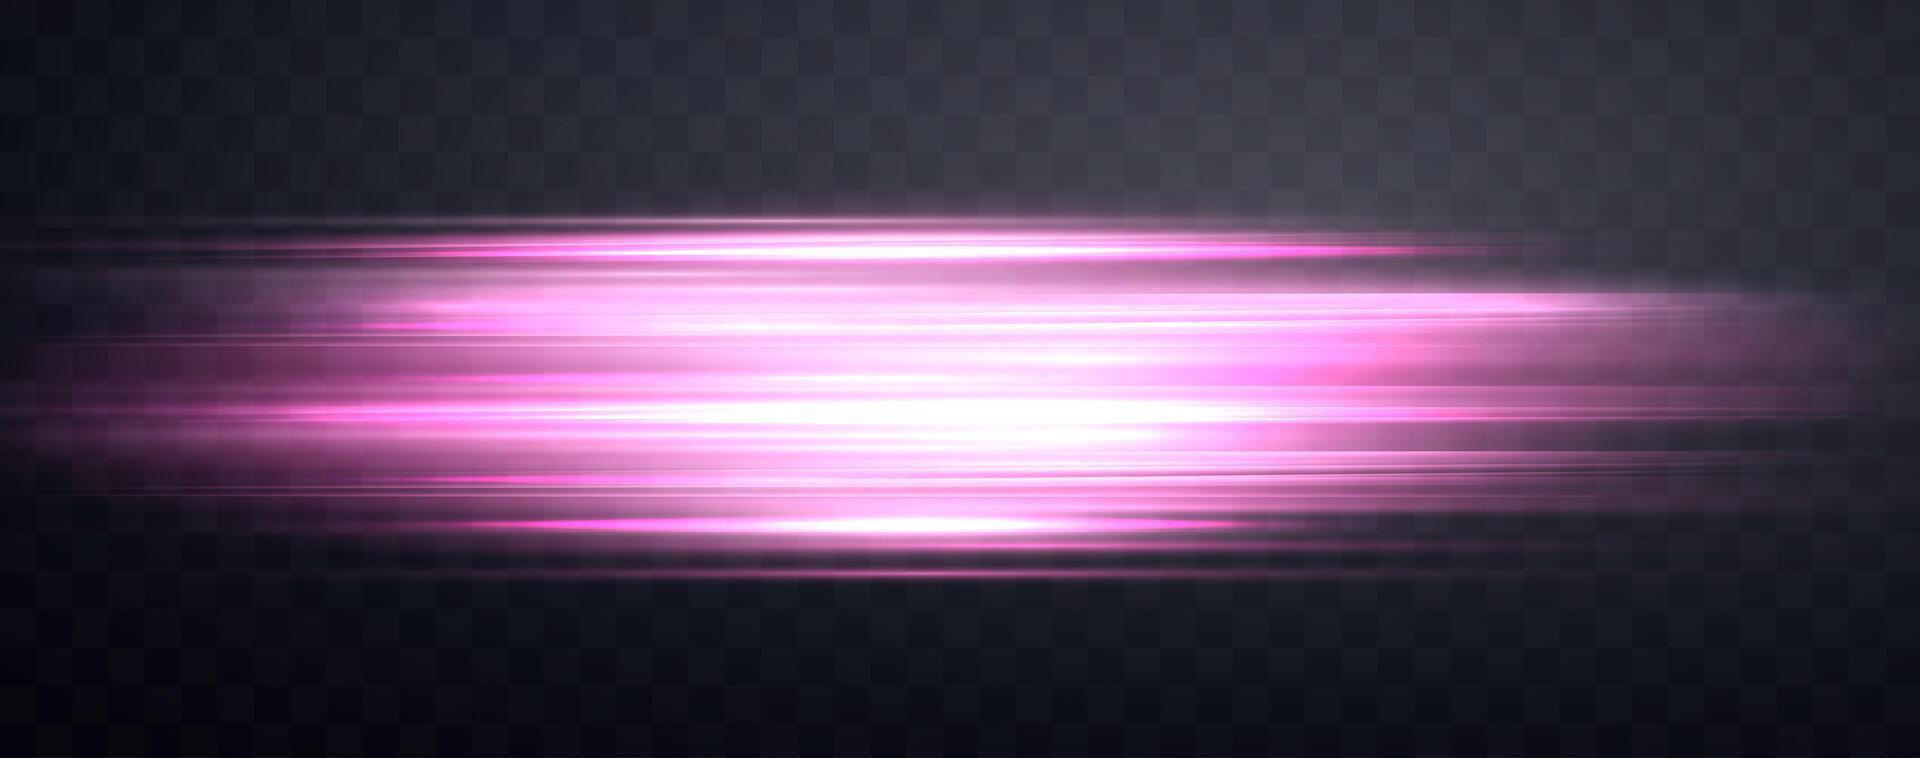 velocidad rayos, velocidad ligero neón fluir, enfocar en movimiento efecto, rosado resplandor velocidad líneas, vistoso ligero caminos, rayas. resumen fondo, vector ilustración.